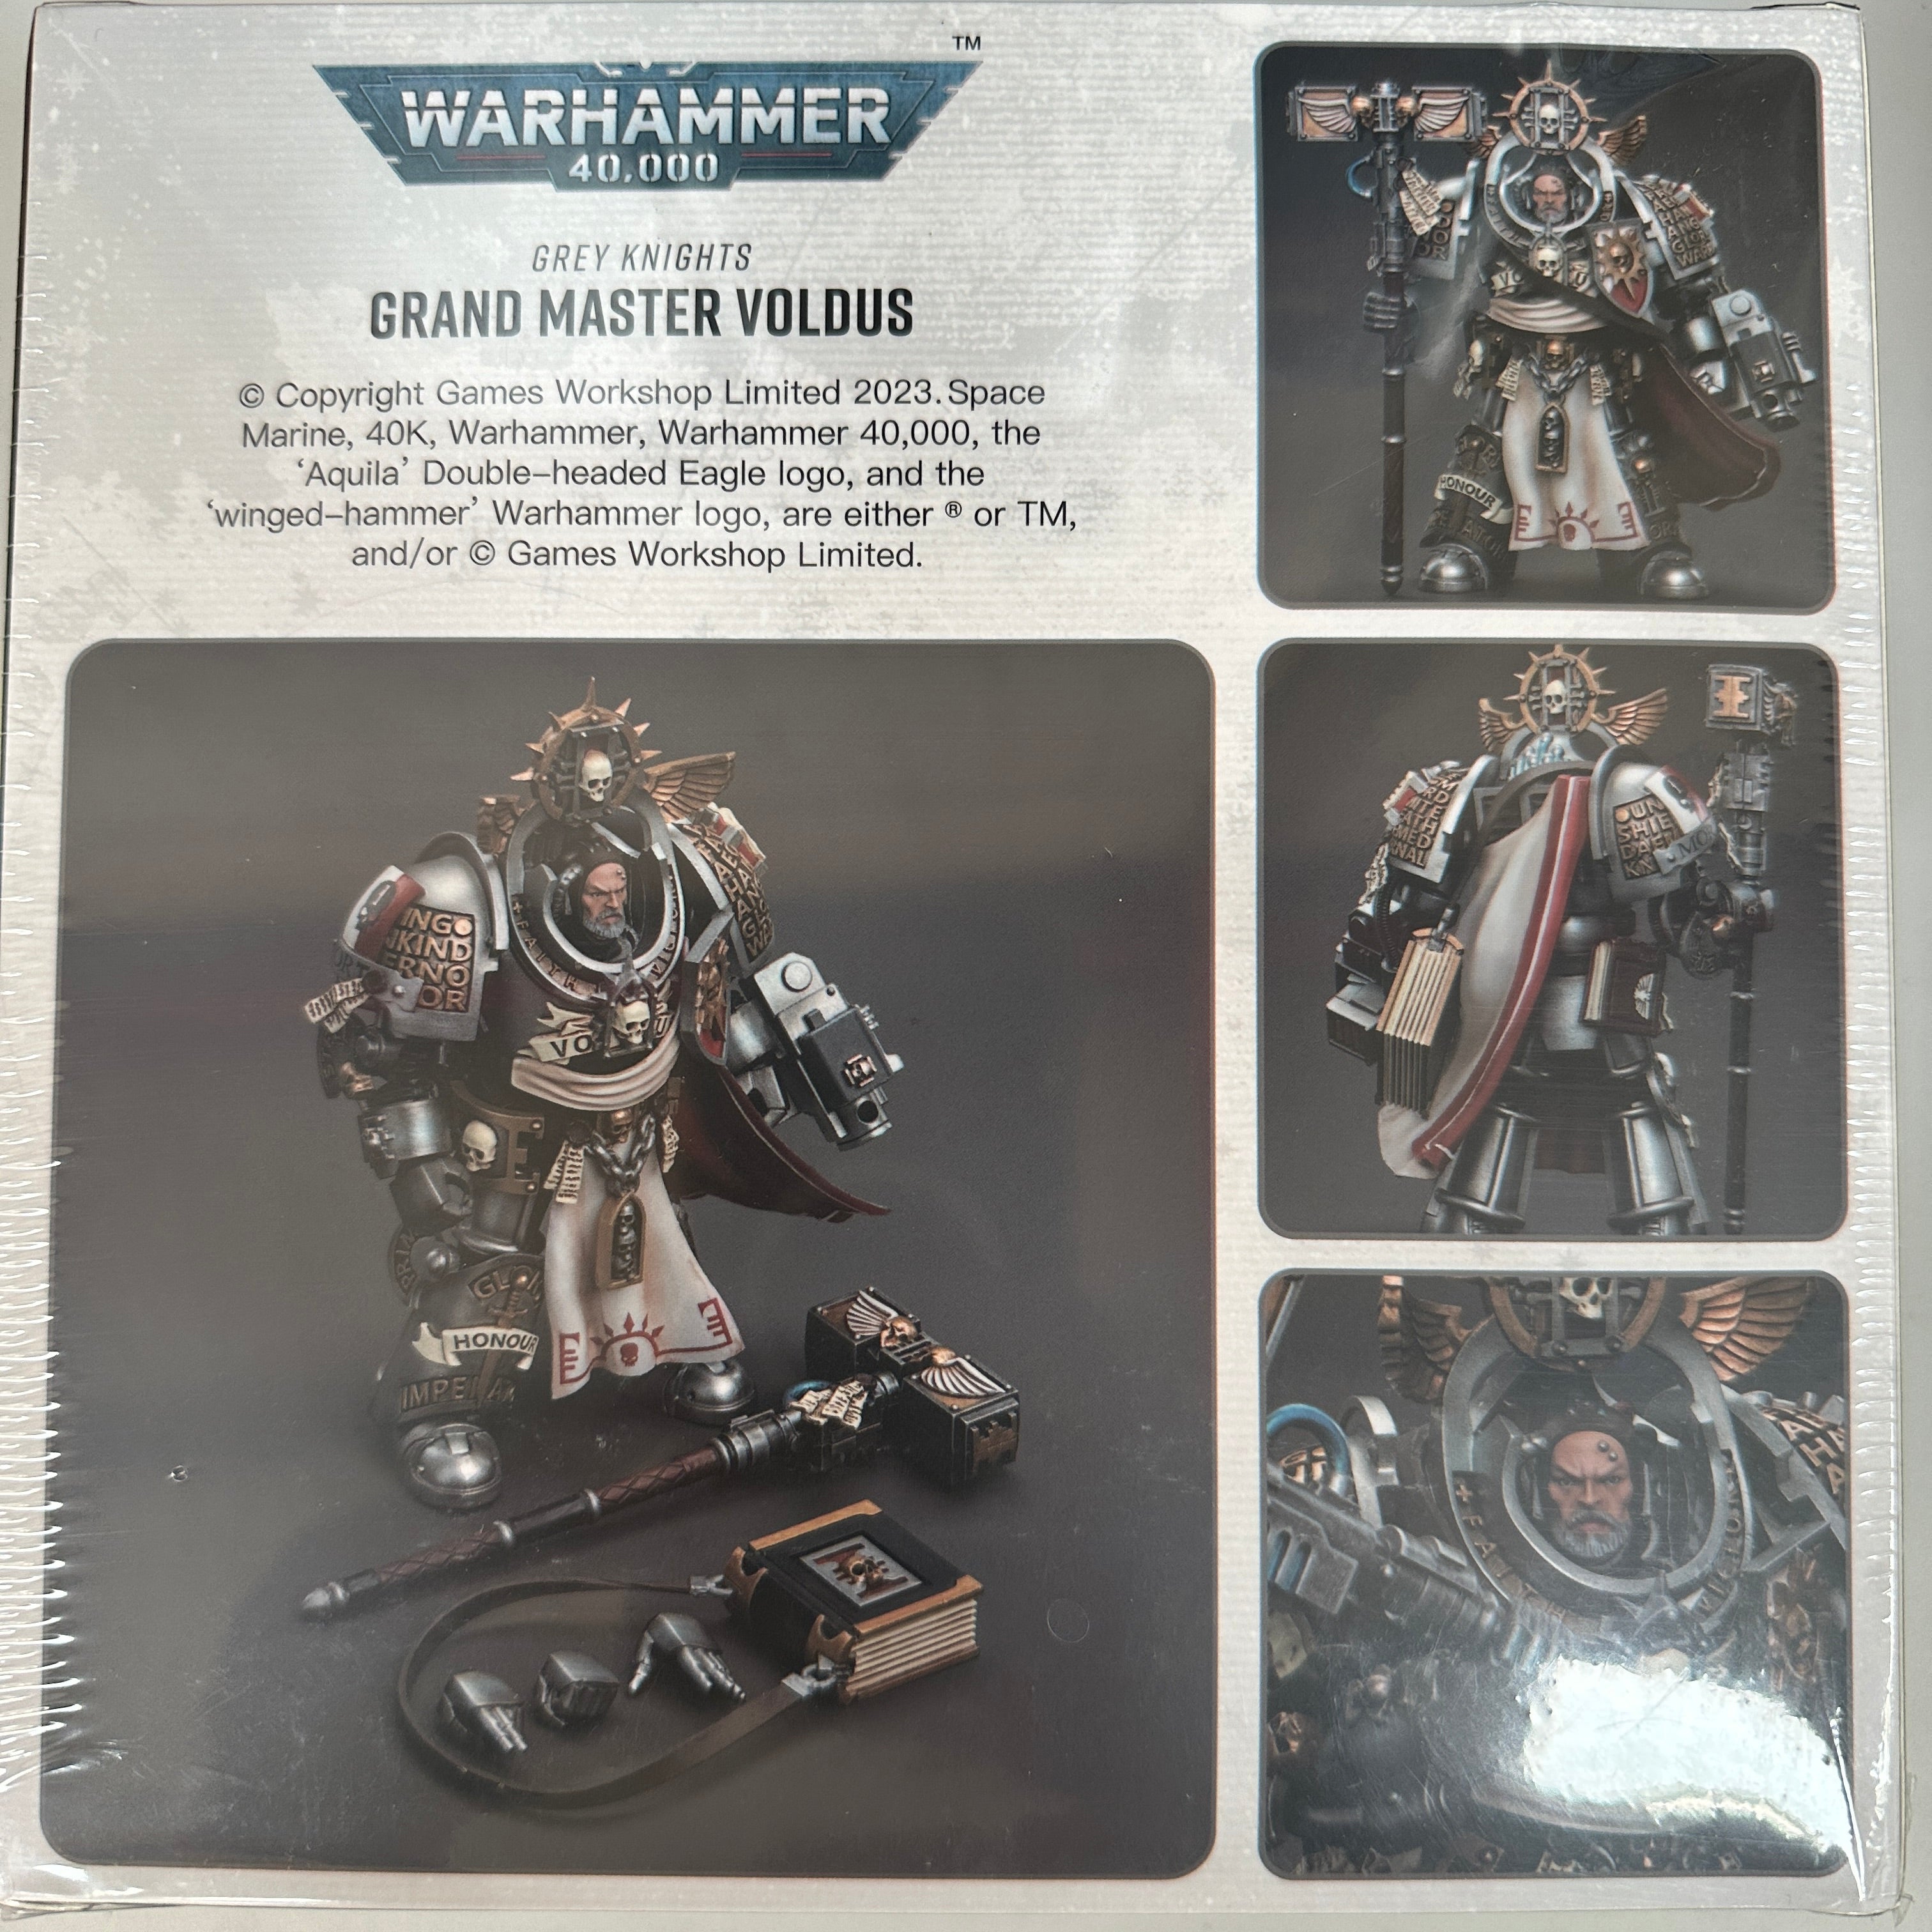 JOYTOY Warhammer 1/18 Grey Knights Grand Master Voldus